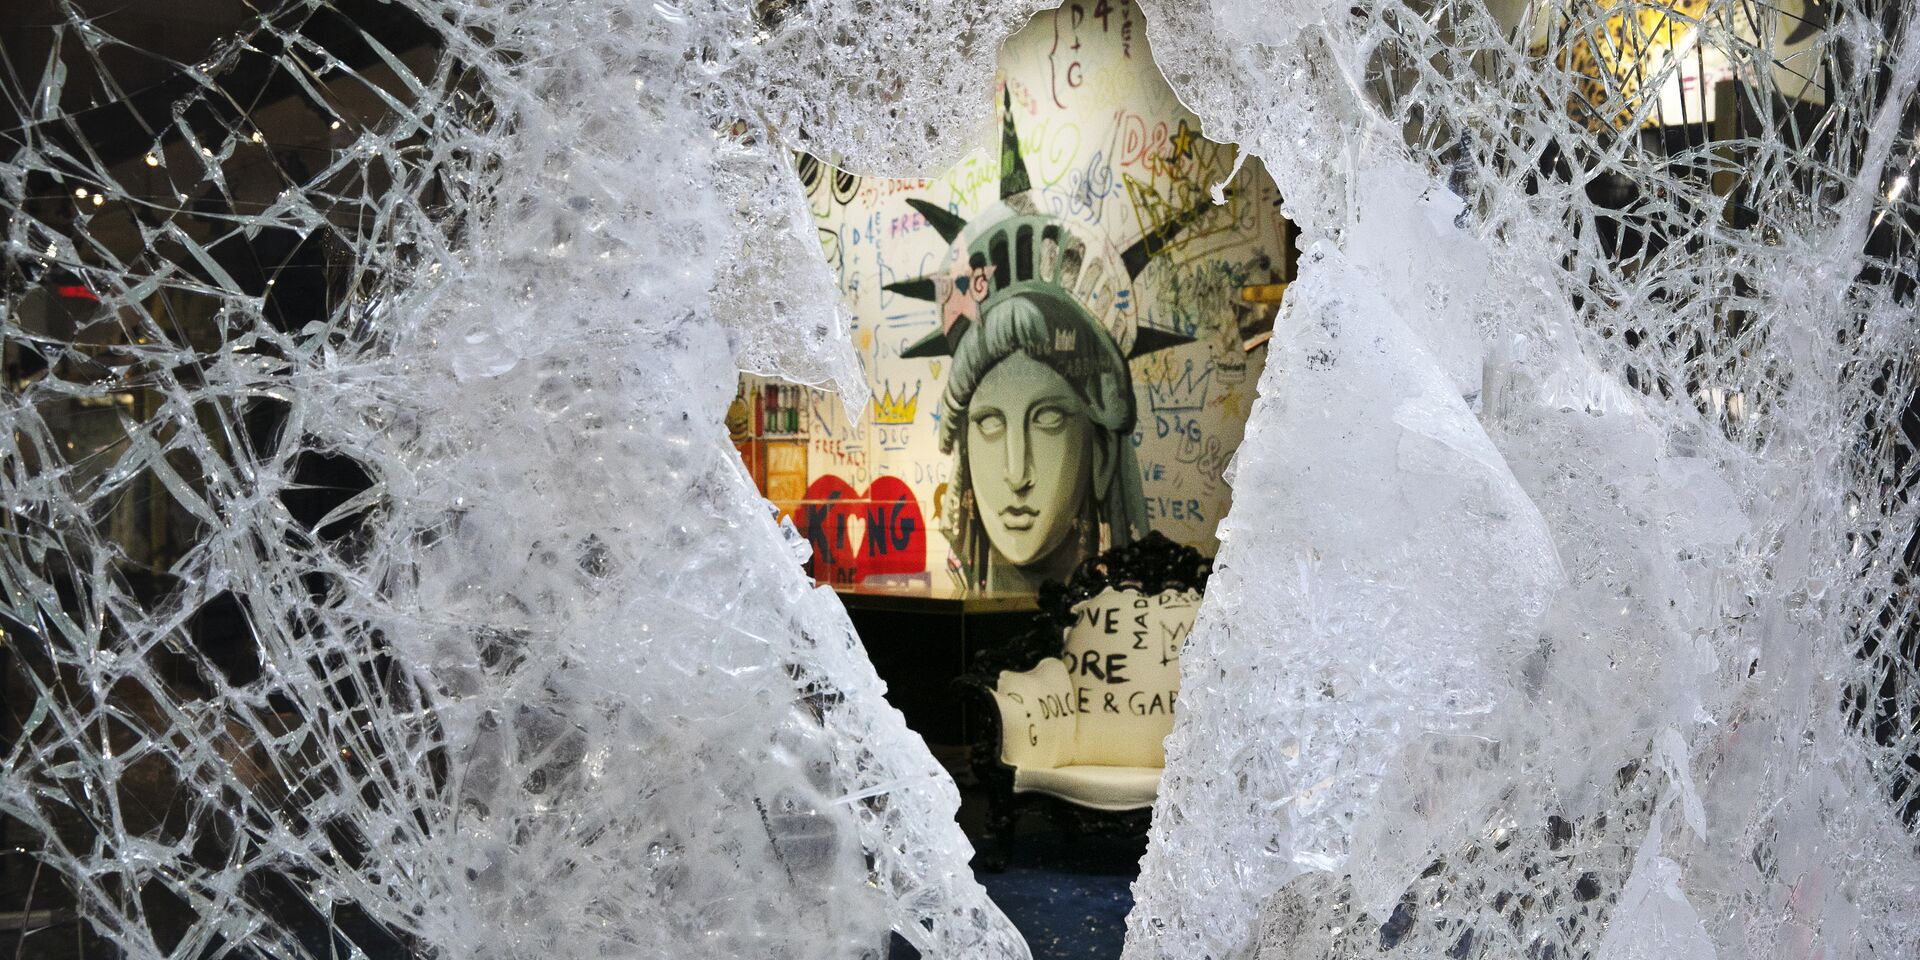 Граффити, изображающее лицо Статуи свободы, через разбитую витрину магазина в Нью-Йорке, США - ИноСМИ, 1920, 07.08.2021